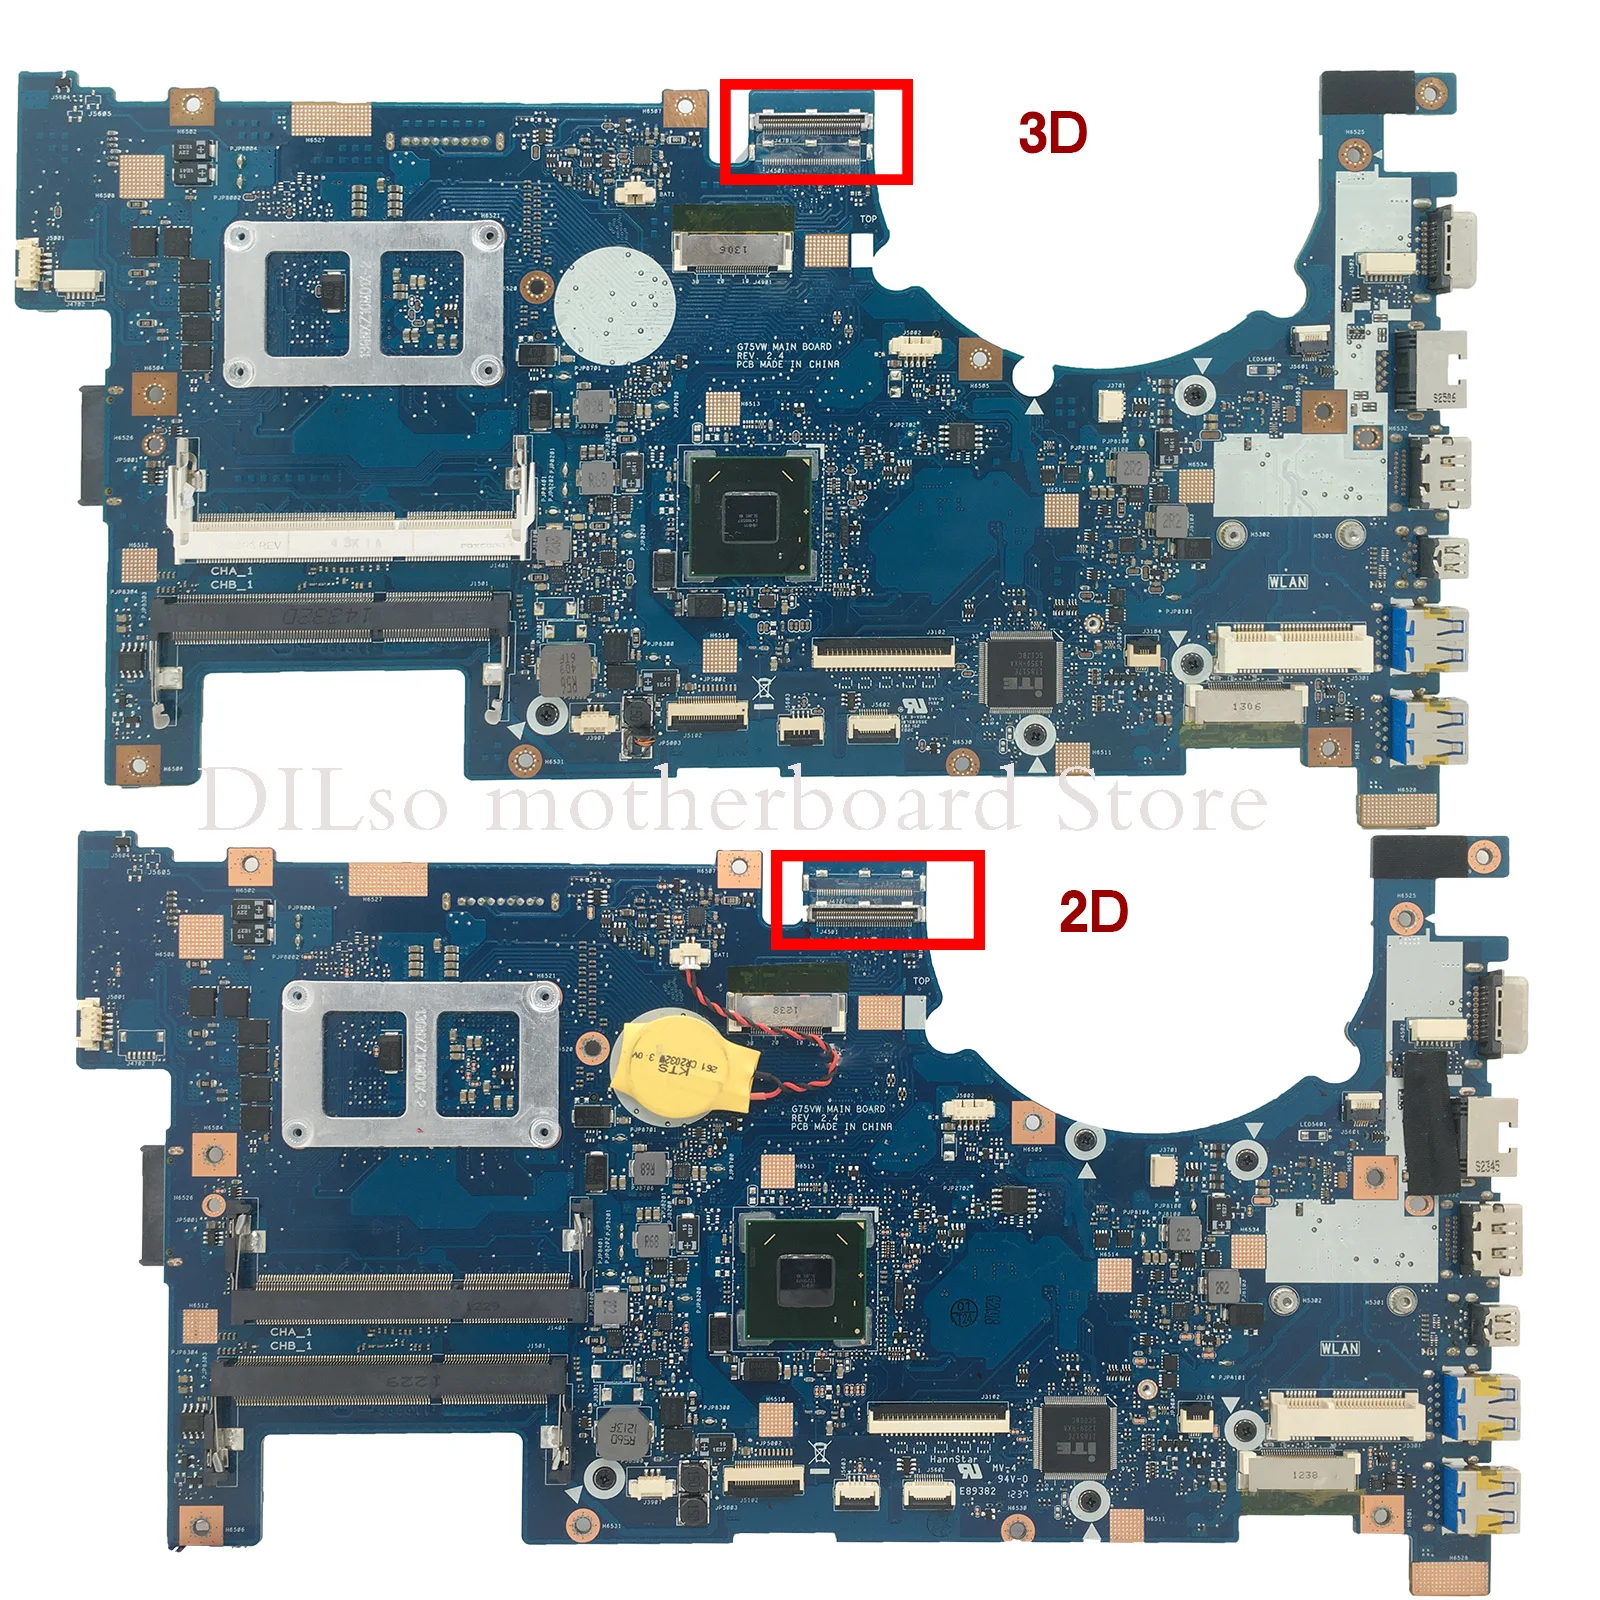 KEFU G75VW Mainboard For ASUS G75VW G75V G75VX support 2D 3D connector 4 Memory slot ddr3 HM65 Laptop Motherboard enlarge